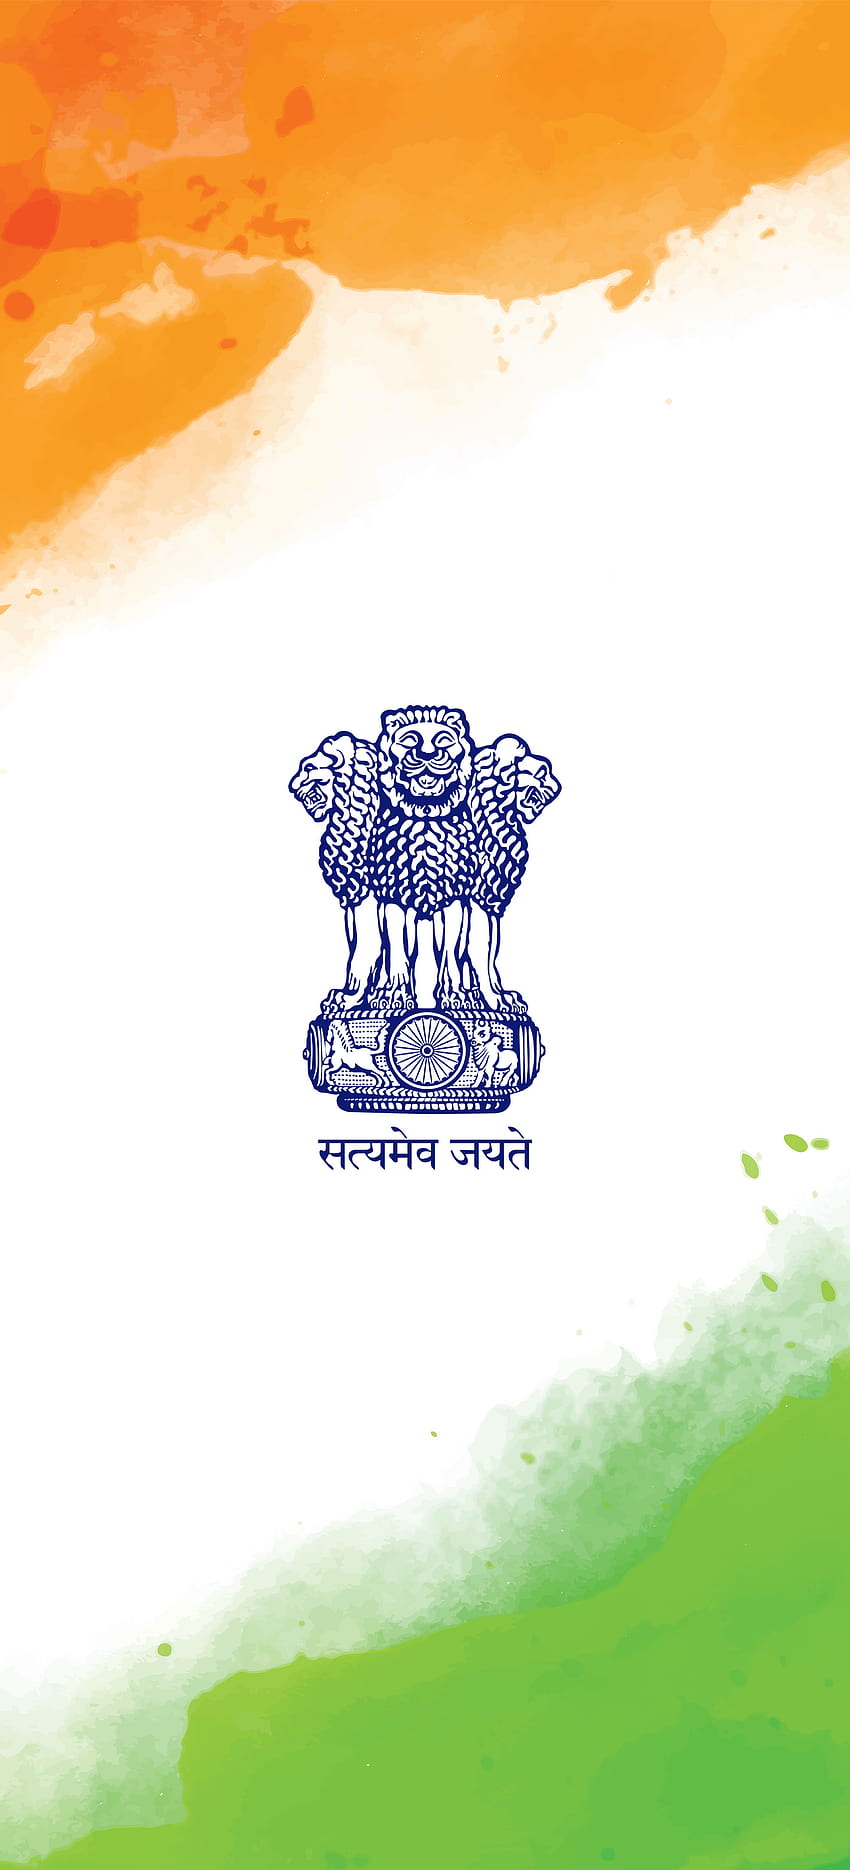 Pemimpin dunia India, India, kemerdekaan, bendera India, Bendera, lambang wallpaper ponsel HD